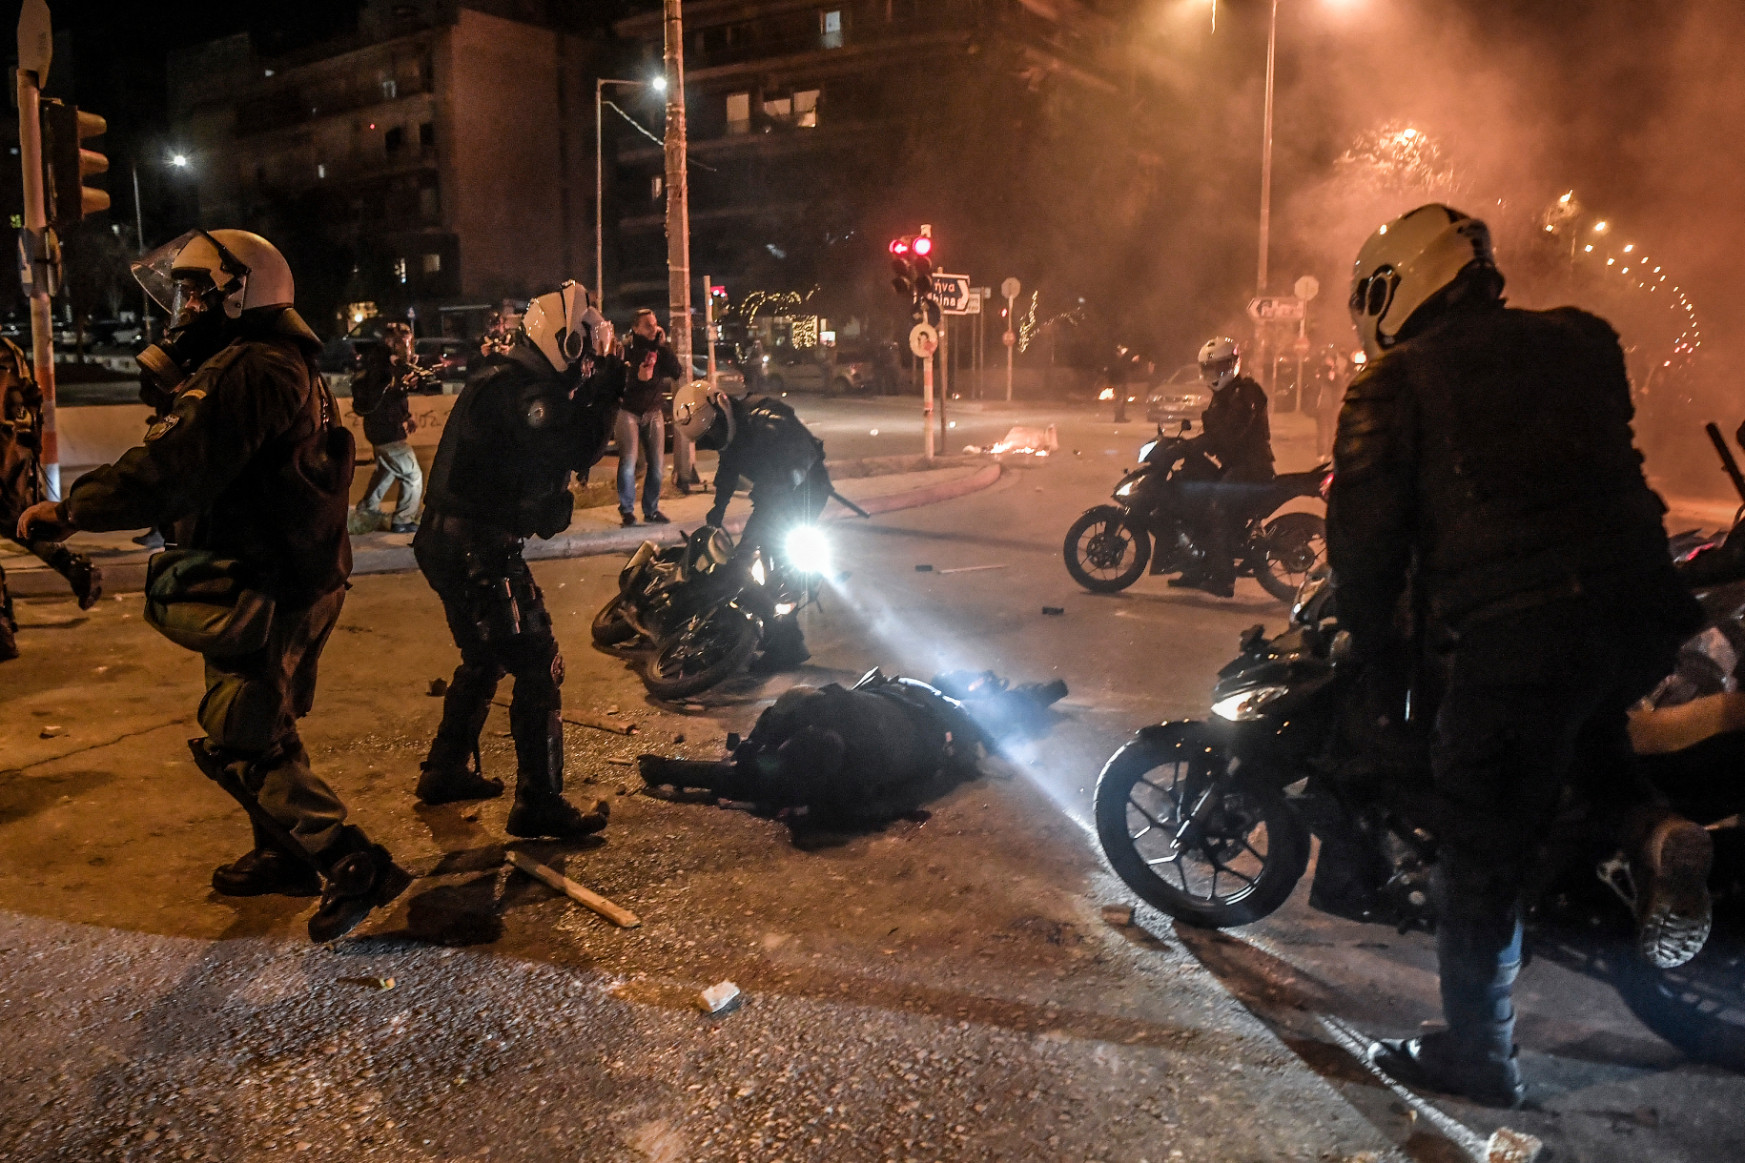 Összeverekedtek a rendőrökkel a rendőrségi erőszak ellen tüntetők Athénban